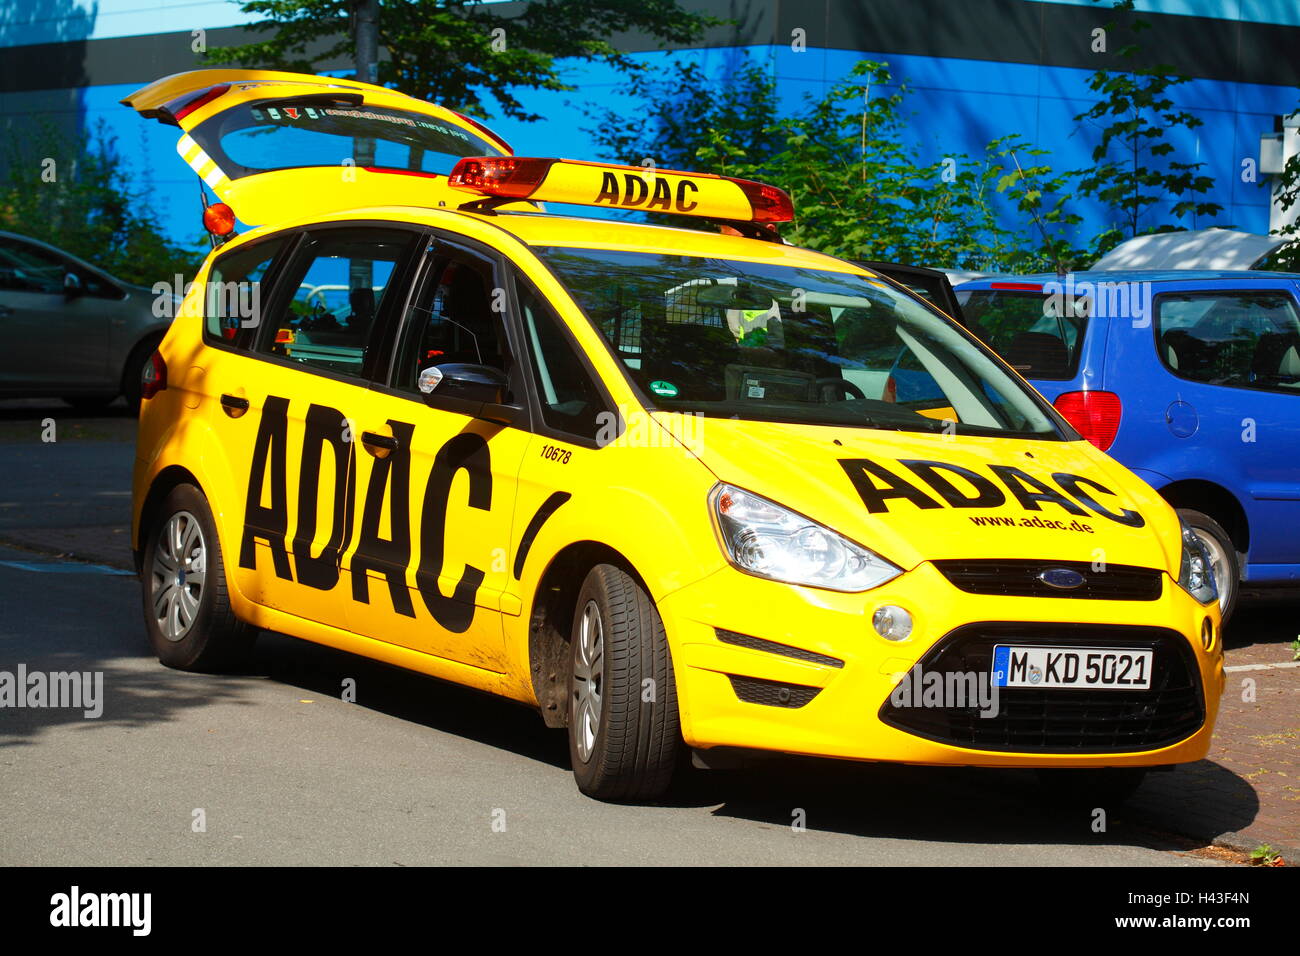 L'assistance routière de l'ADAC, avec lettrage voiture ADAC, Brême, Allemagne Banque D'Images